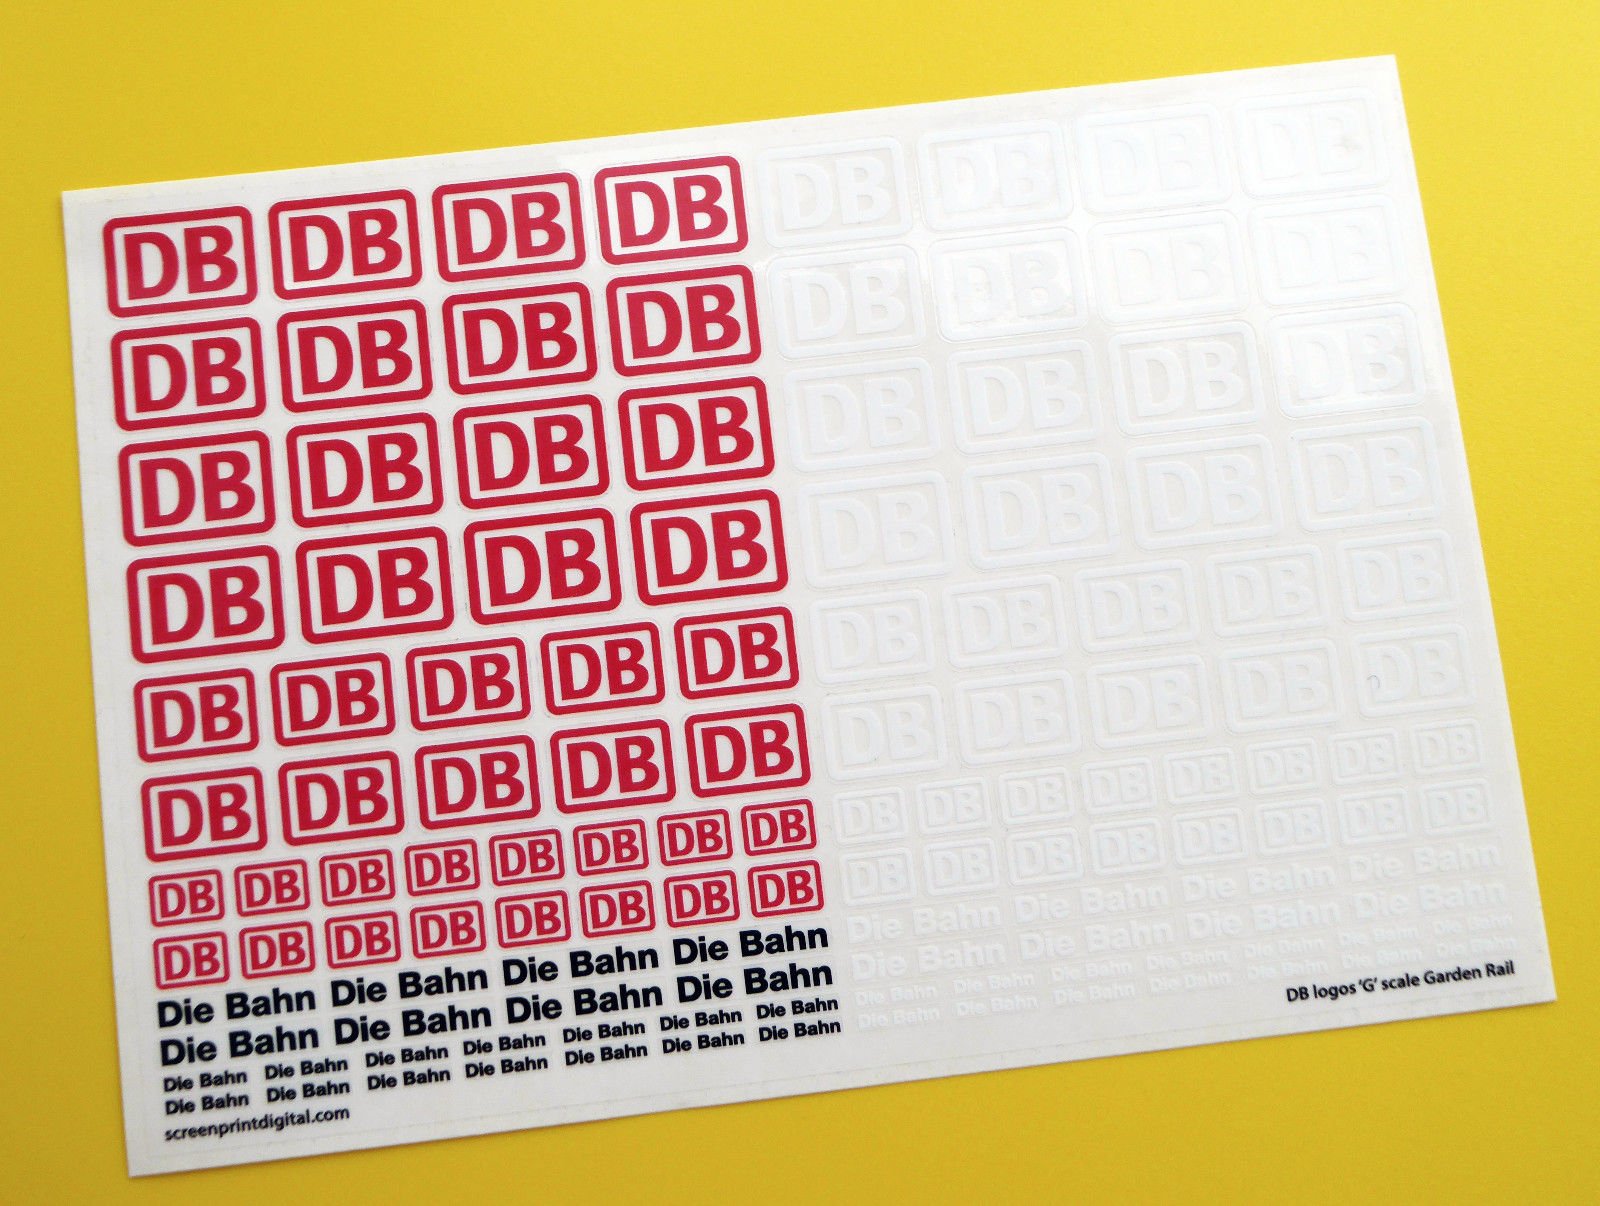 DB Würfel Bahn Deutsche Federal Railways Logo 'G' maßstab garten zug sticker aufkleber von screenprintdigital